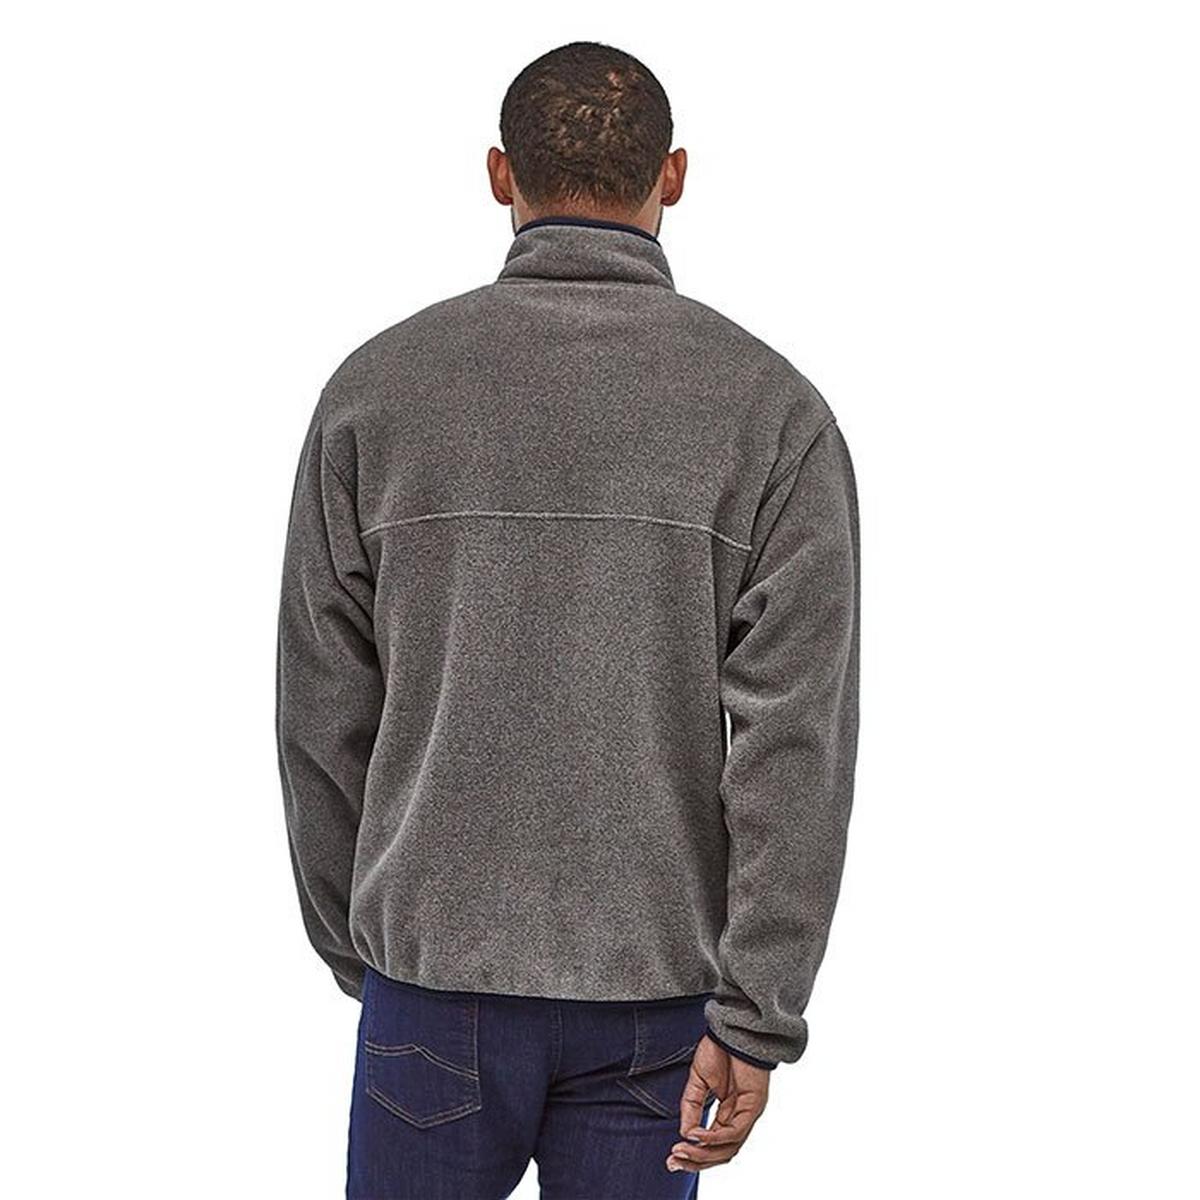 Men's Lightweight Synchilla® Snap-T® Fleece Pullover Top